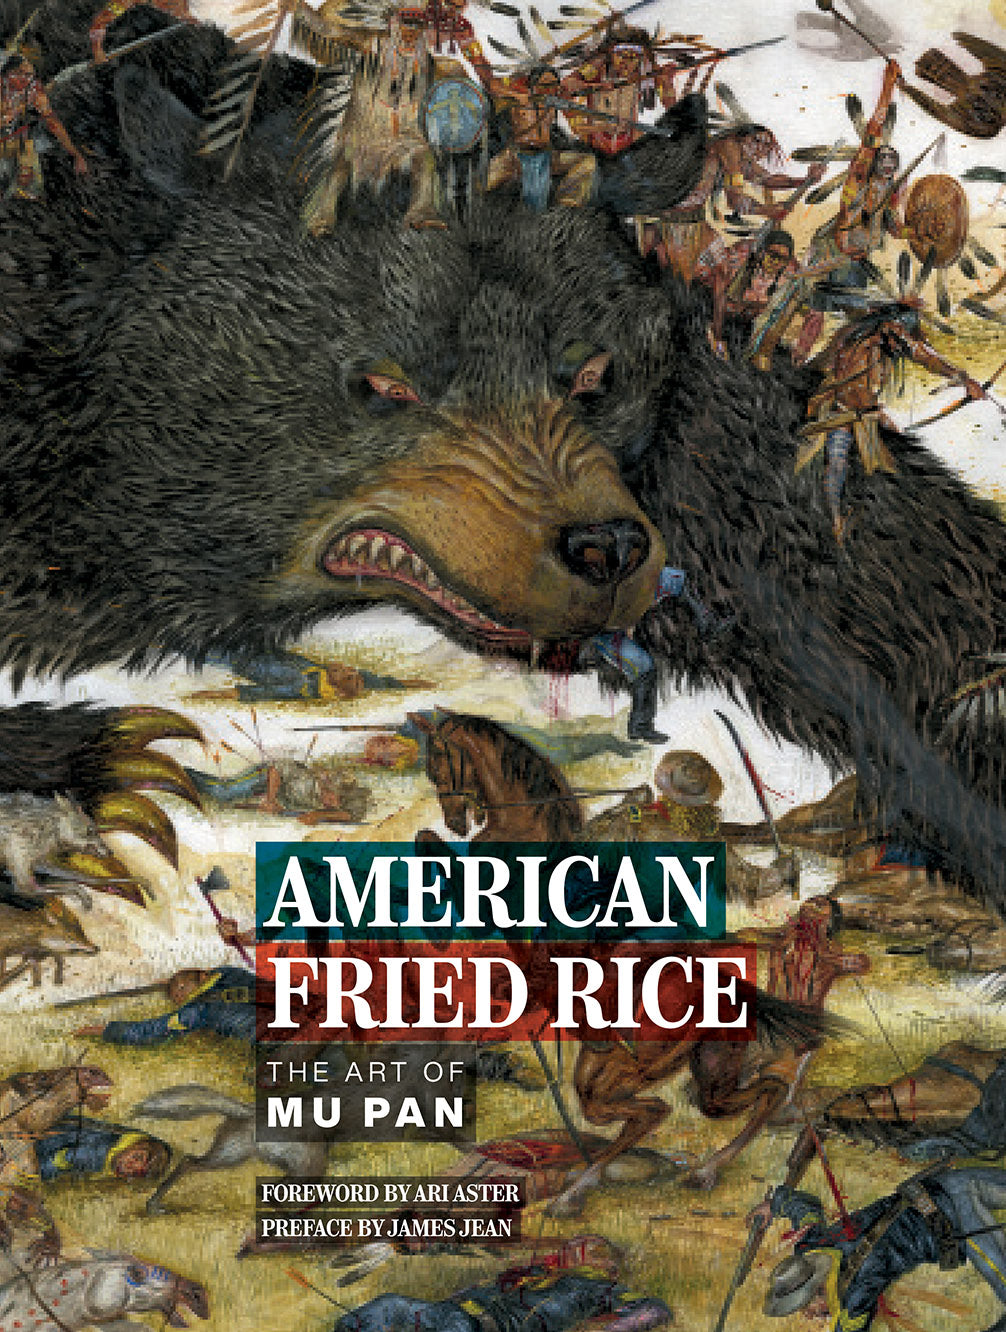 Mu Pan: "American Fried Rice" (signed)